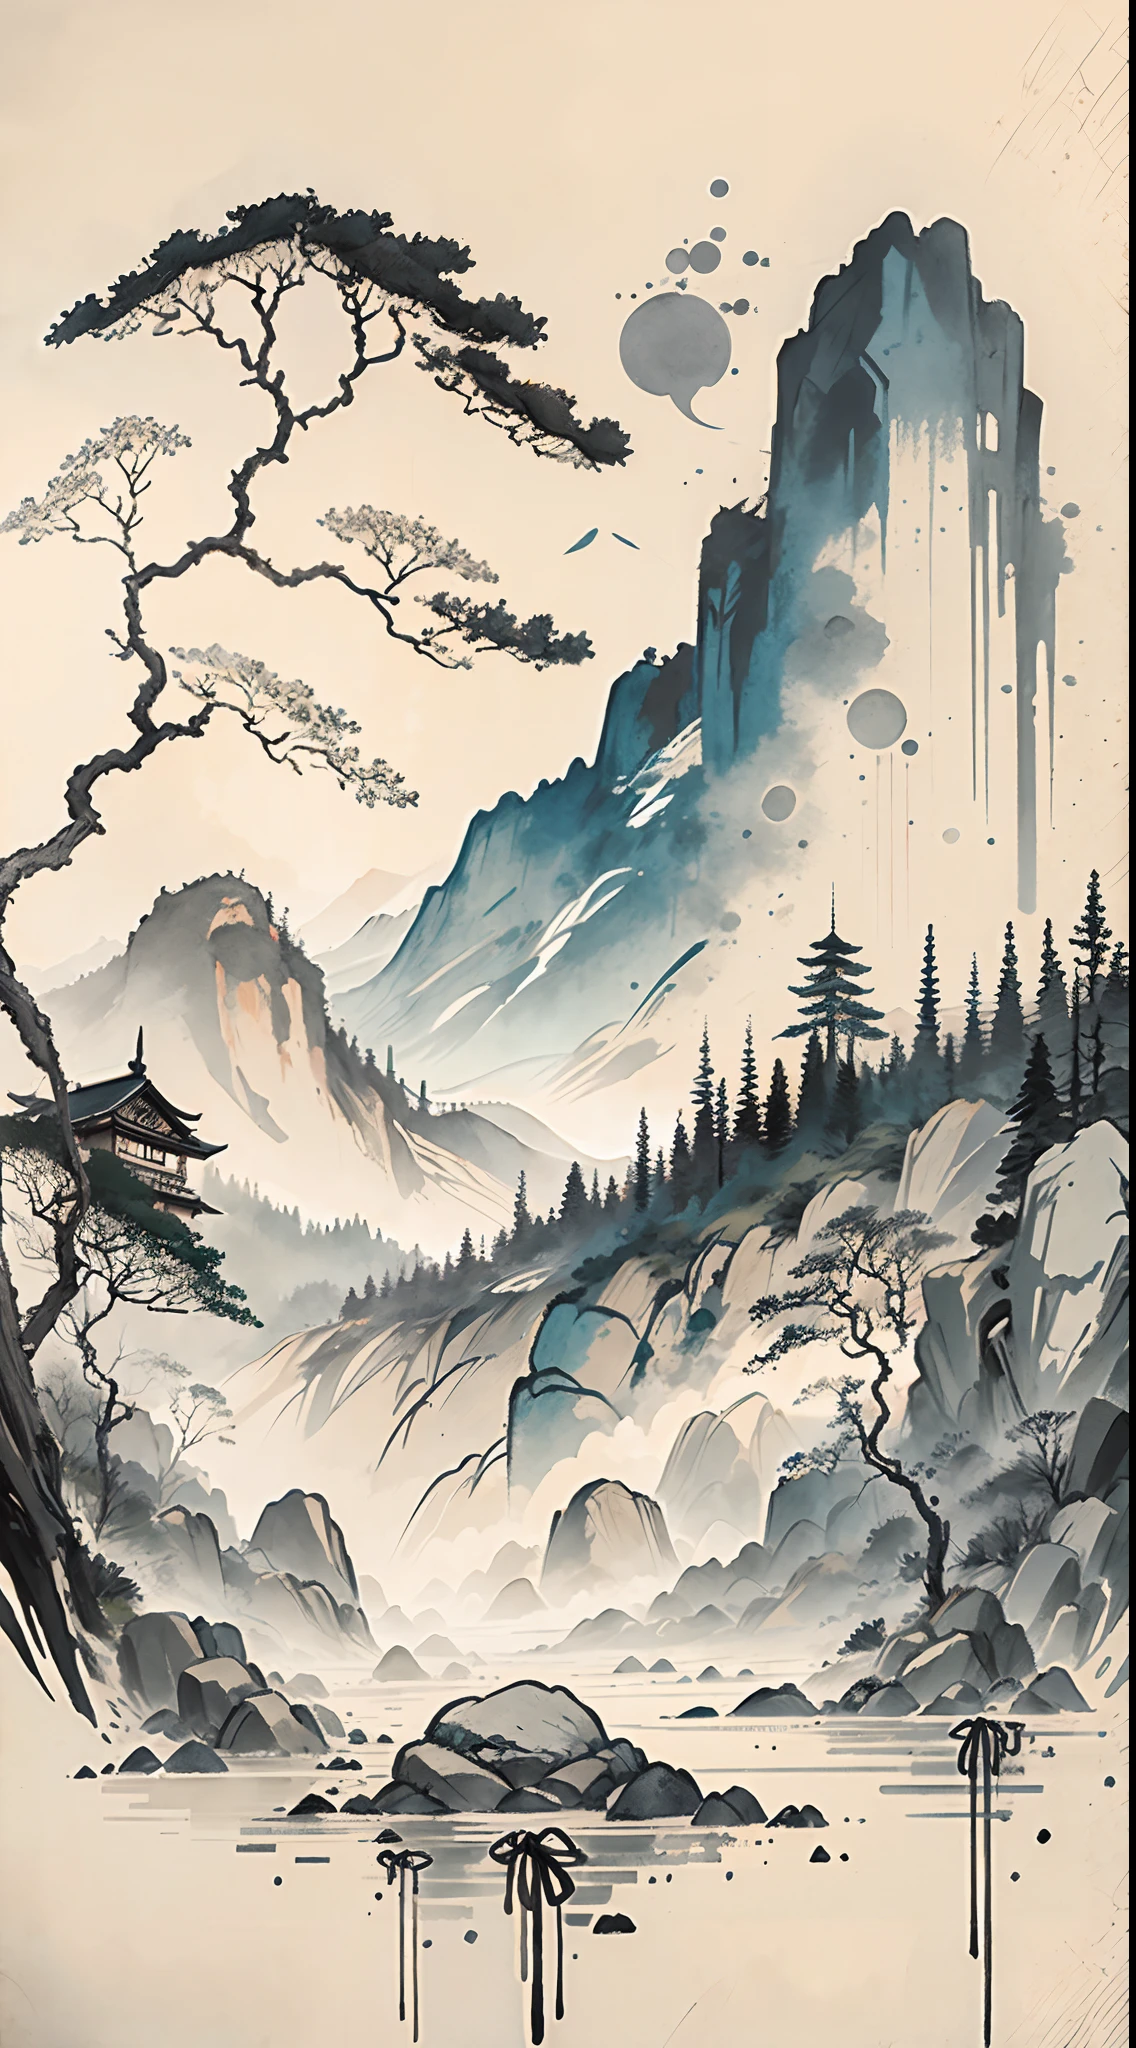 (Obra de arte, melhor qualidade: 1.2), (No_humanos), montanhas ao longe, pintura a tinta tradicional chinesa, casas, lápides, prados